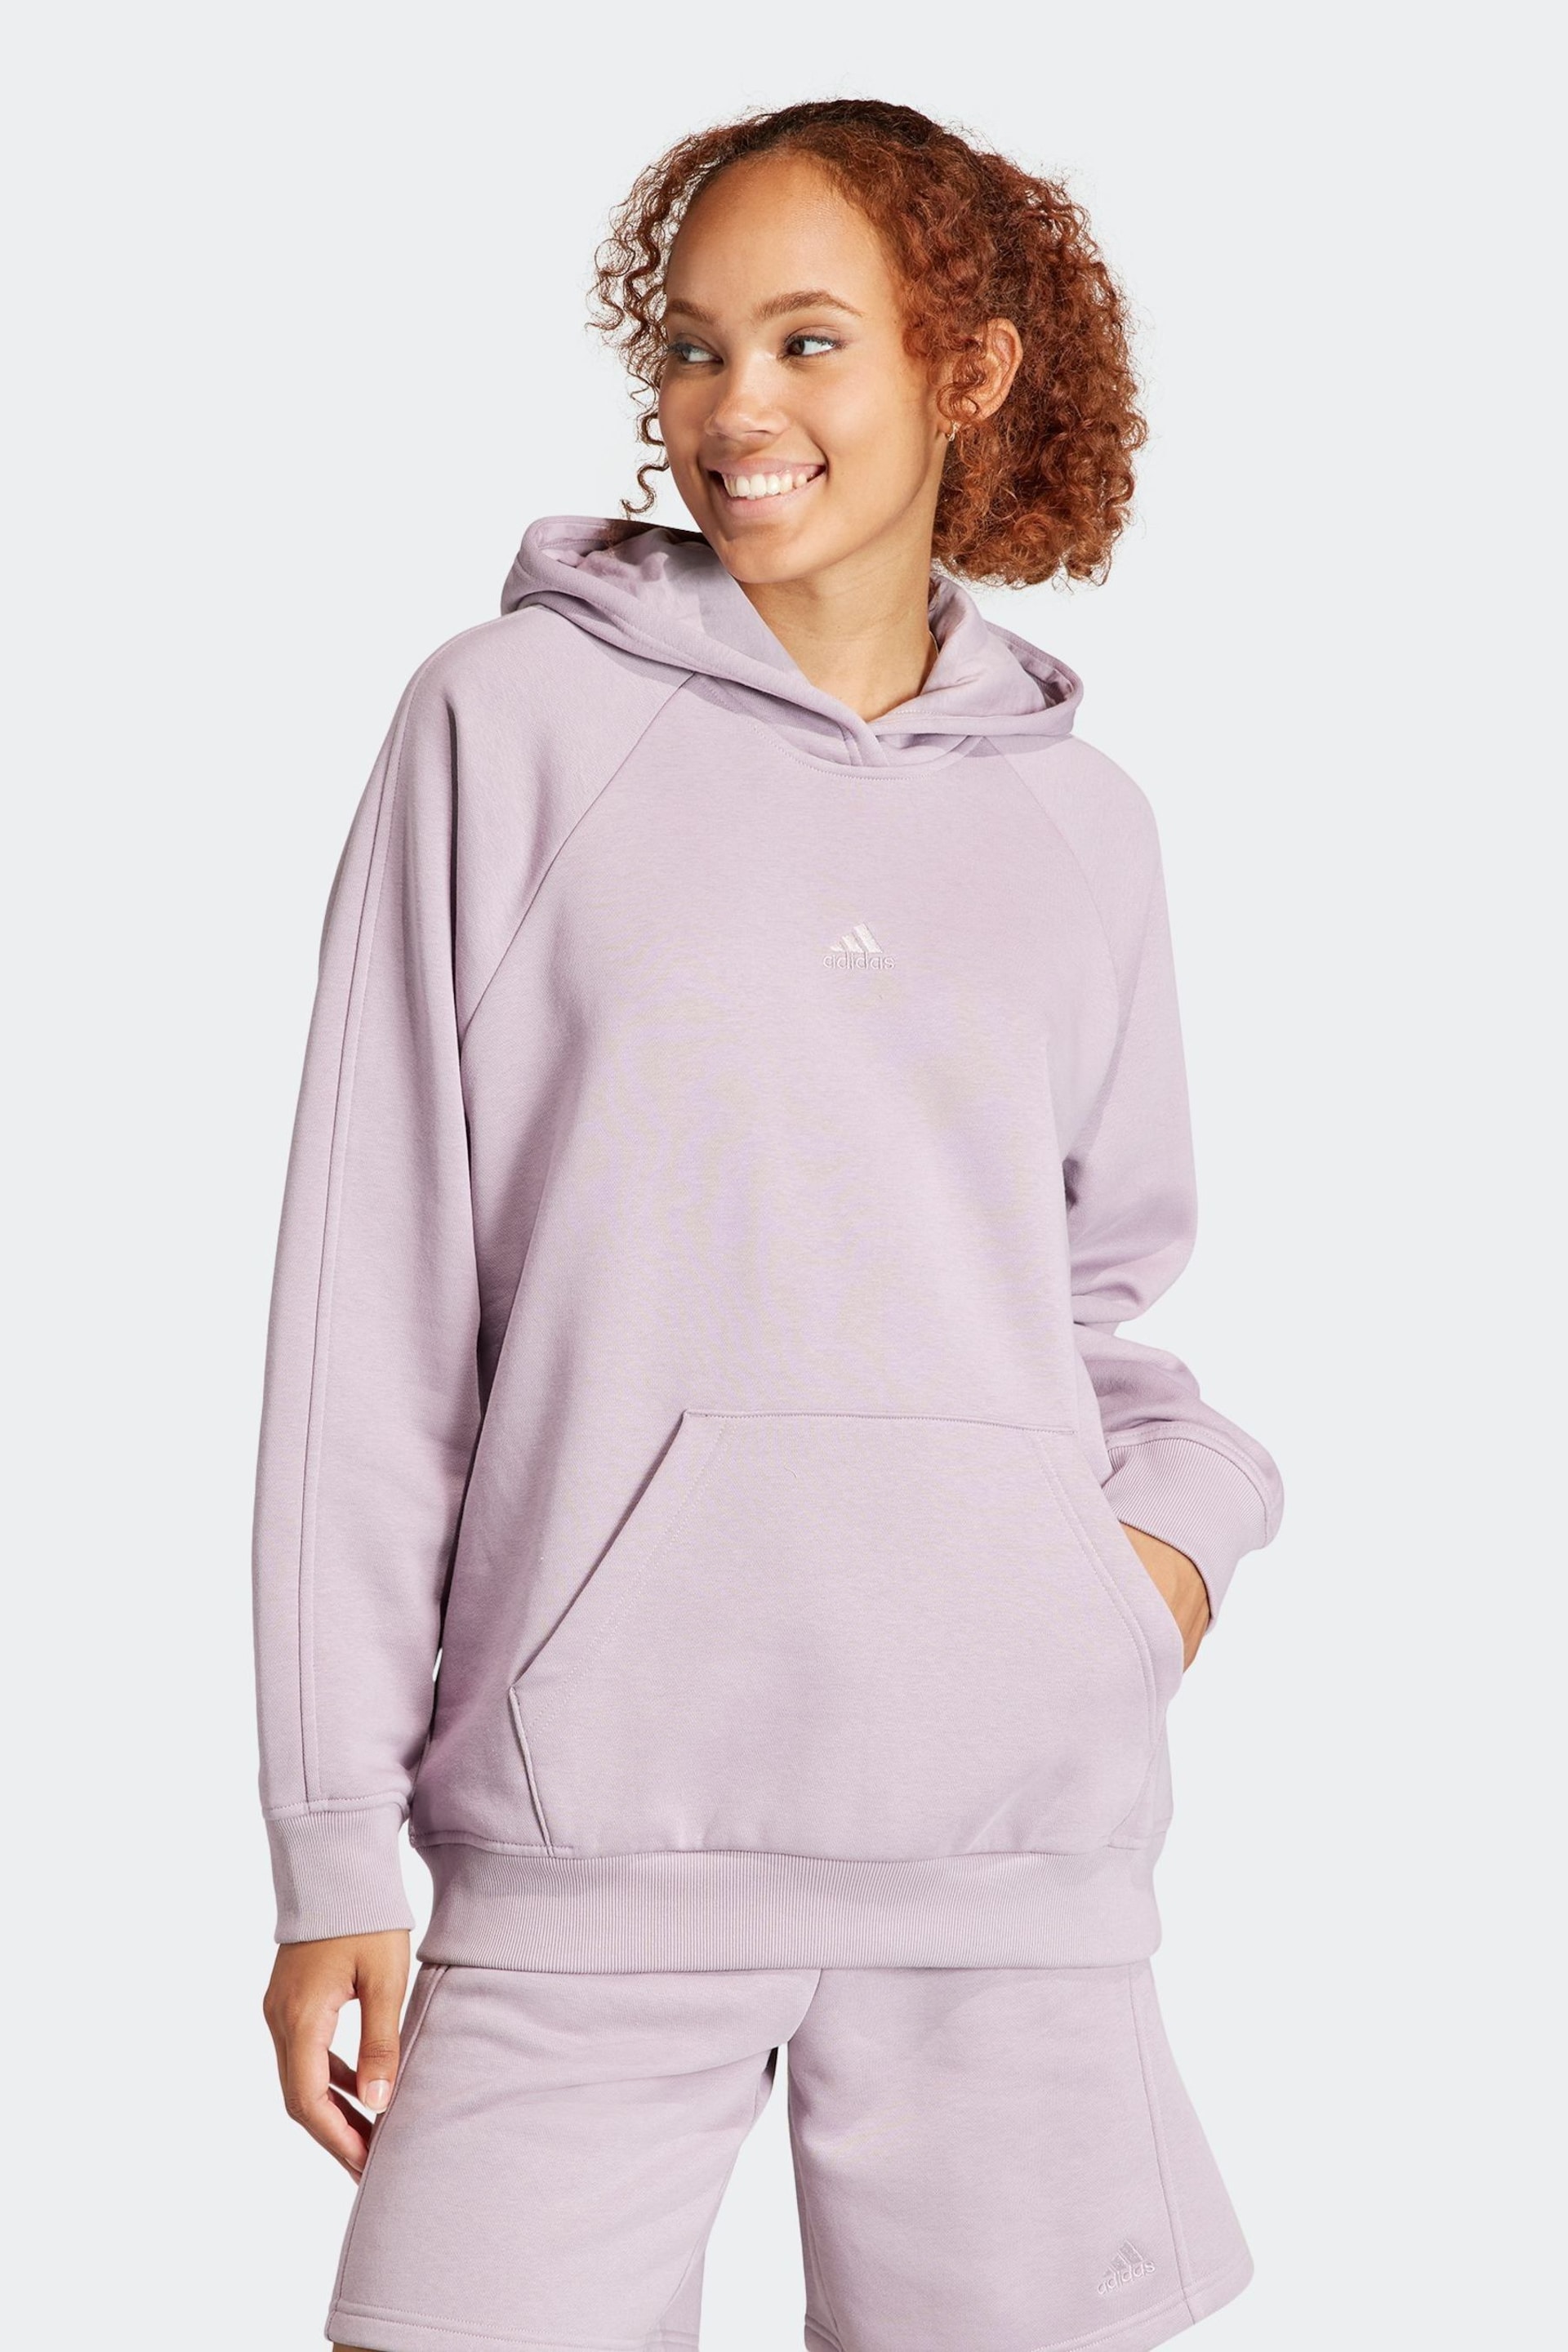 adidas Purple Boyfriend Sportswear All Szn Fleece Hoodie - Image 1 of 7